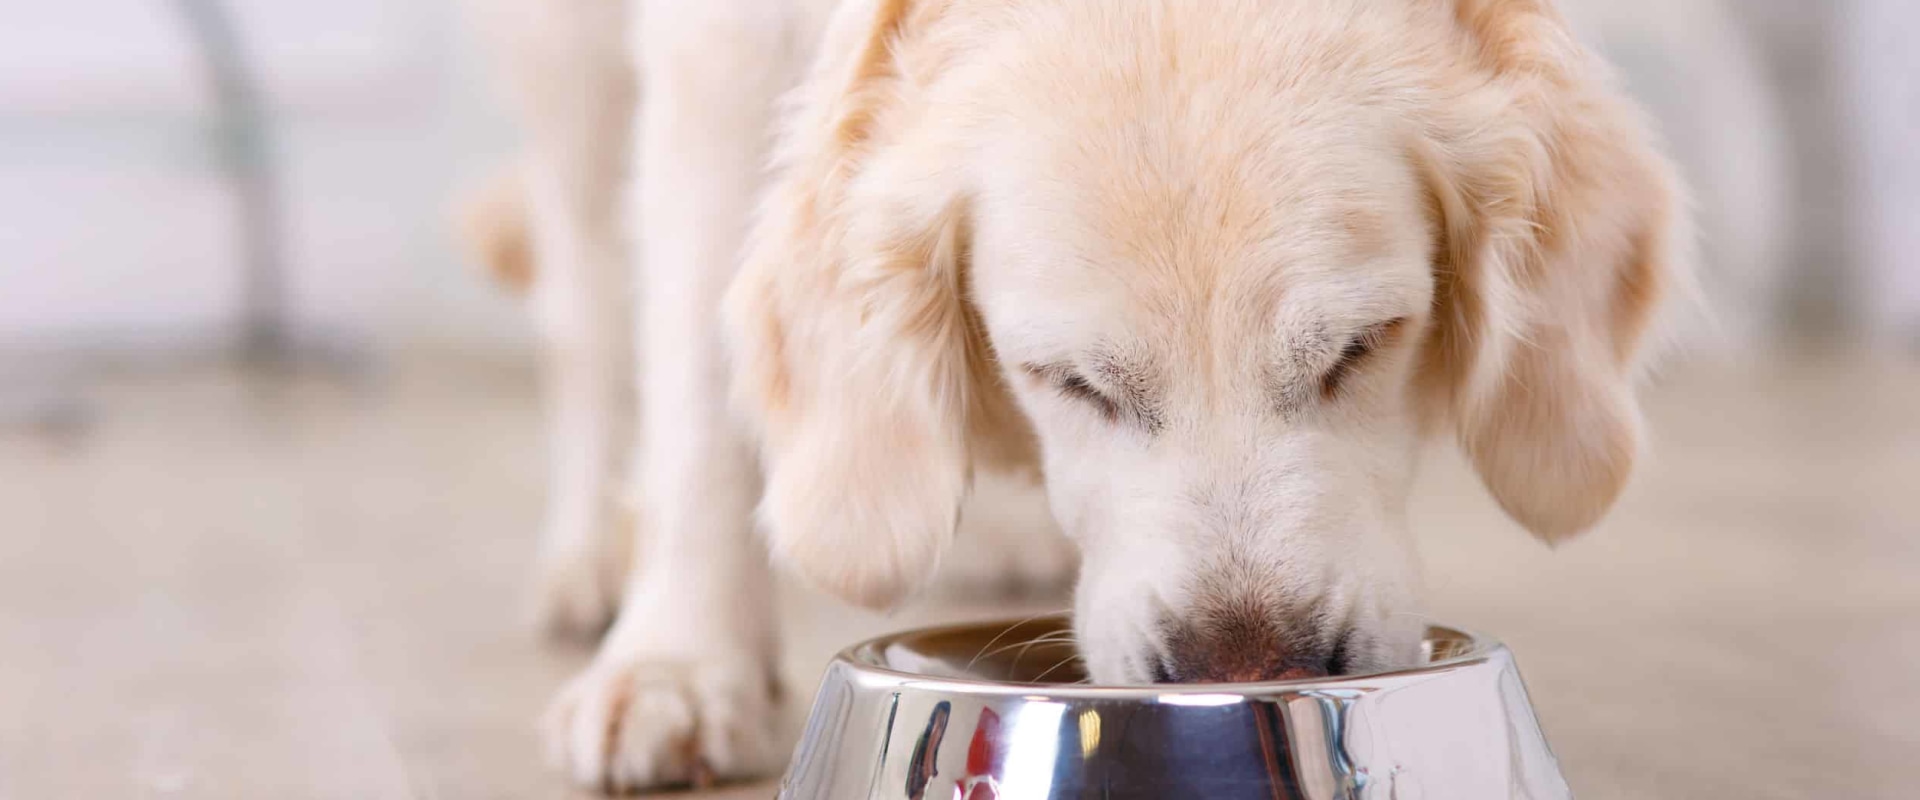 Waarom zijn keramische kommen beter voor honden?